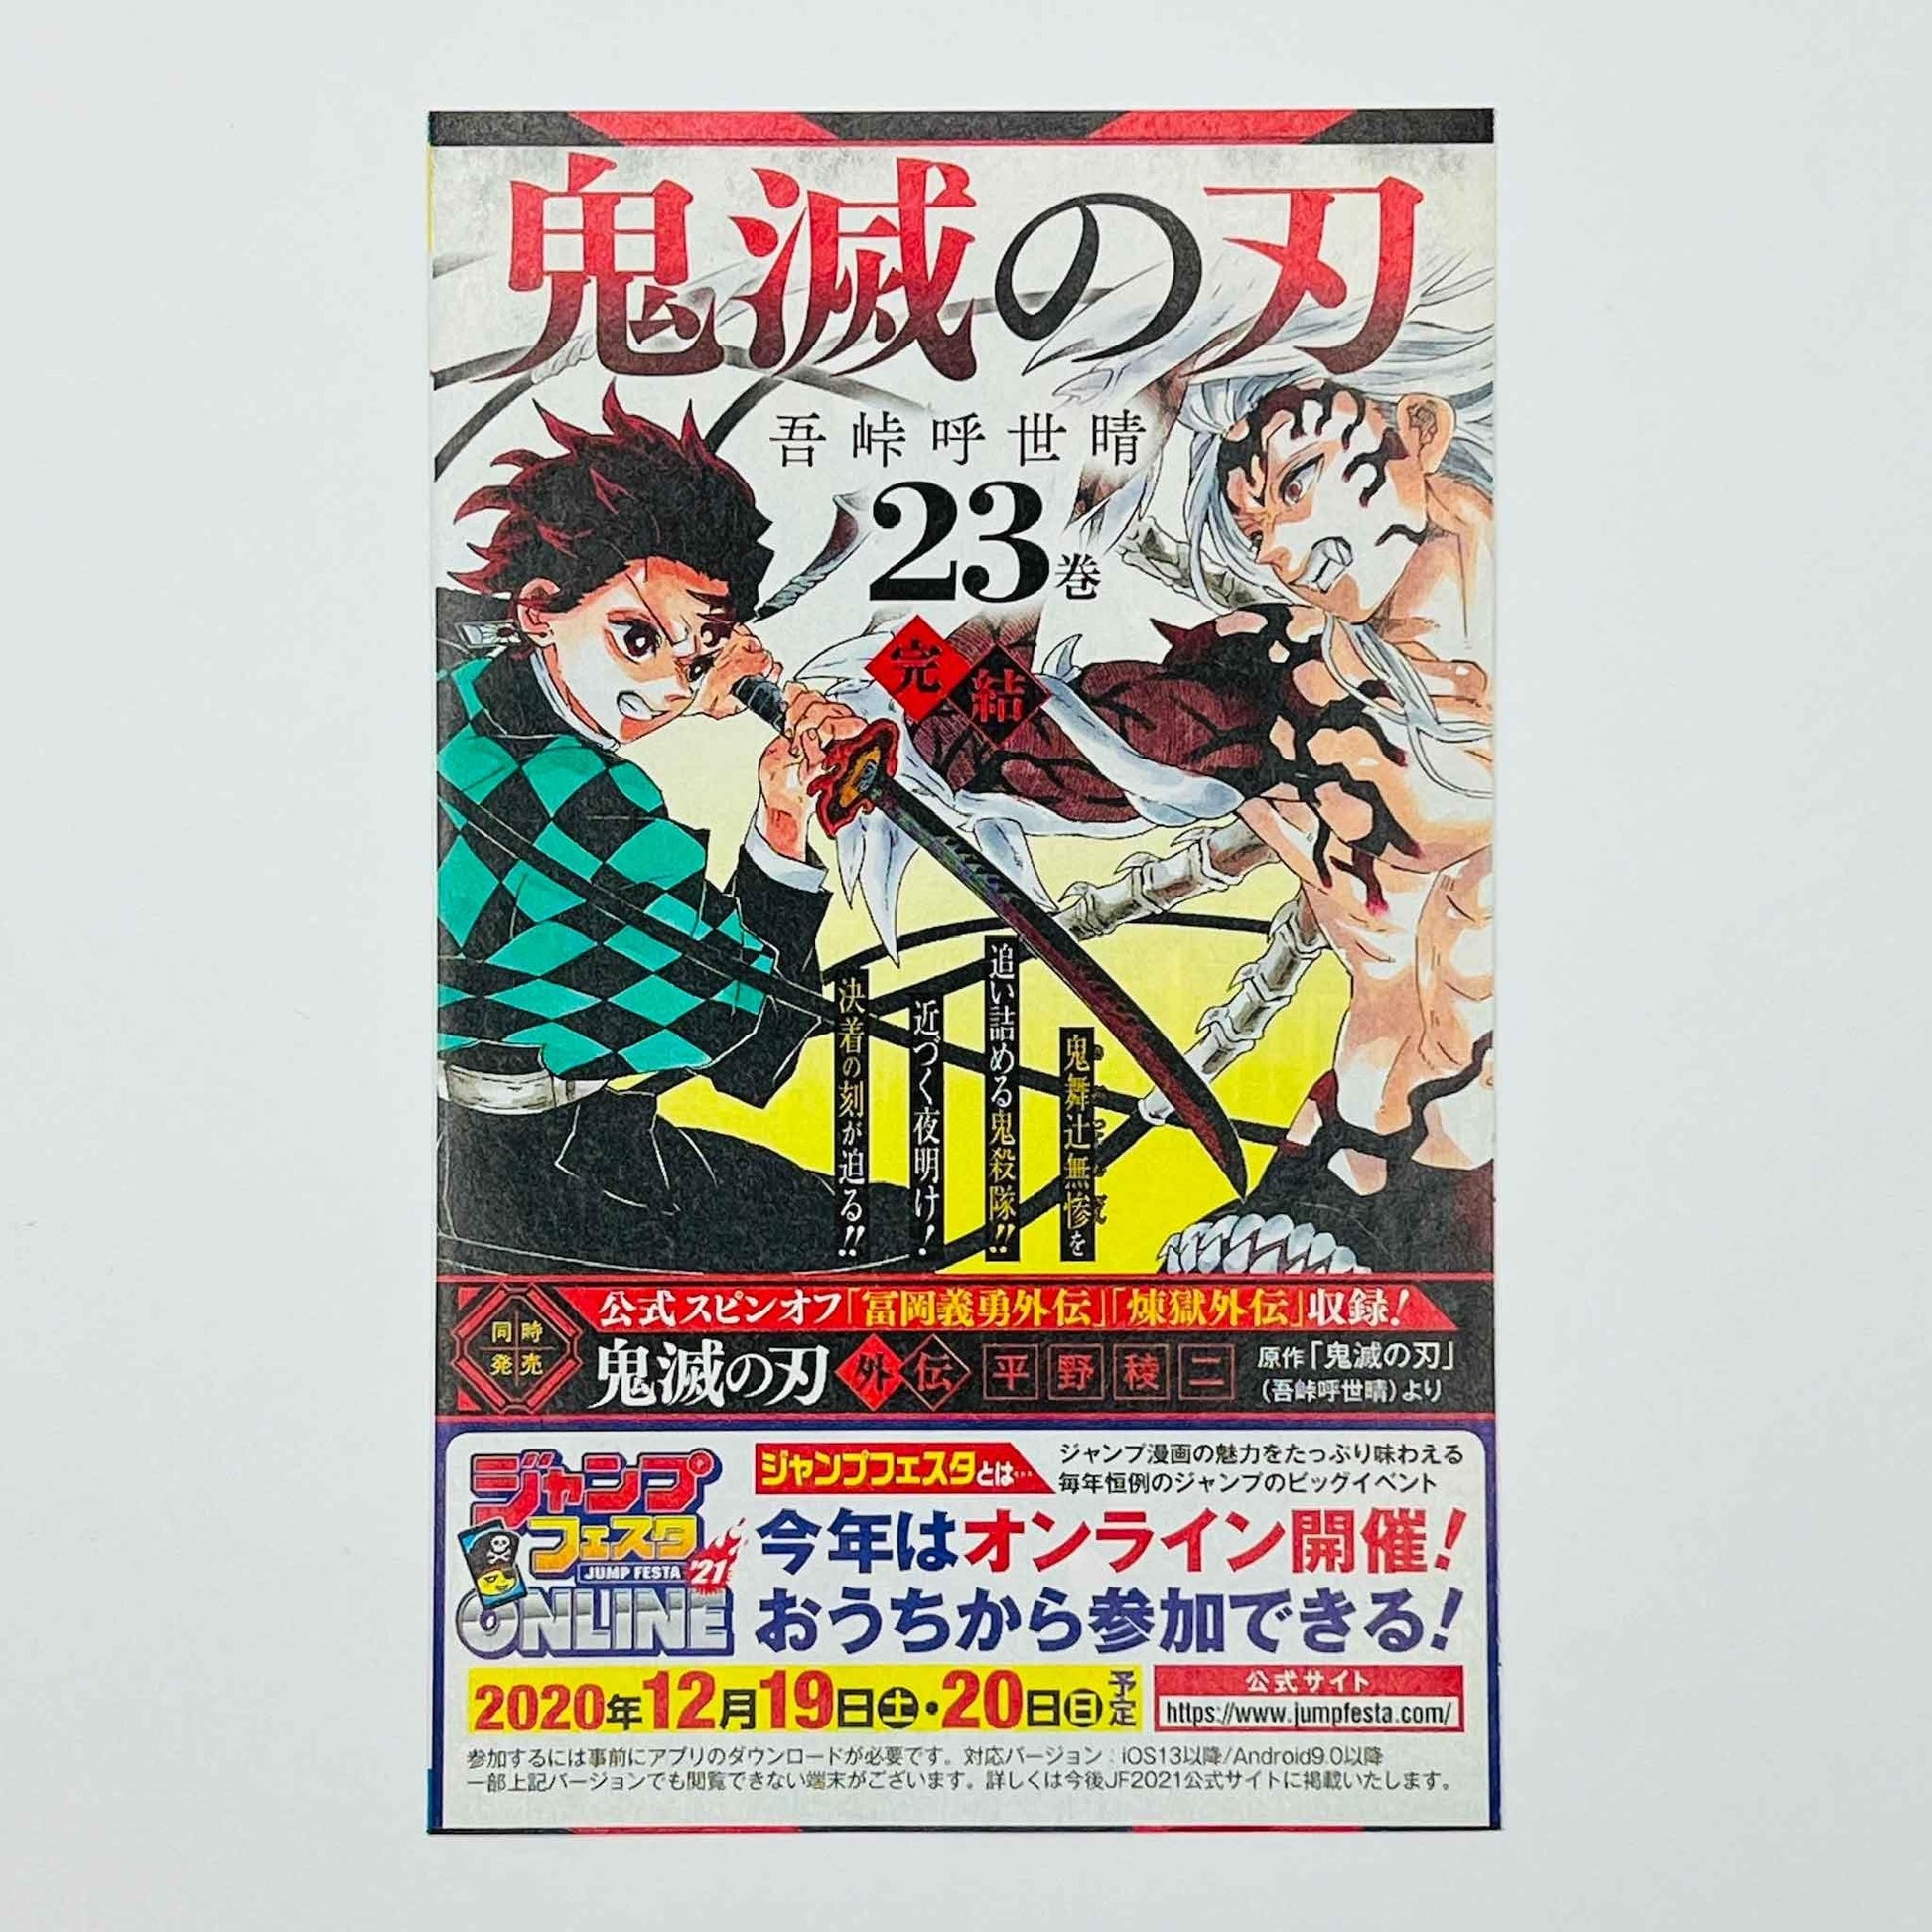 Kaiju No. 8 - Volume 01 /w Obi - 1stPrint.net - 1st First Print Edition Manga Store - M-KAIJU-01-001